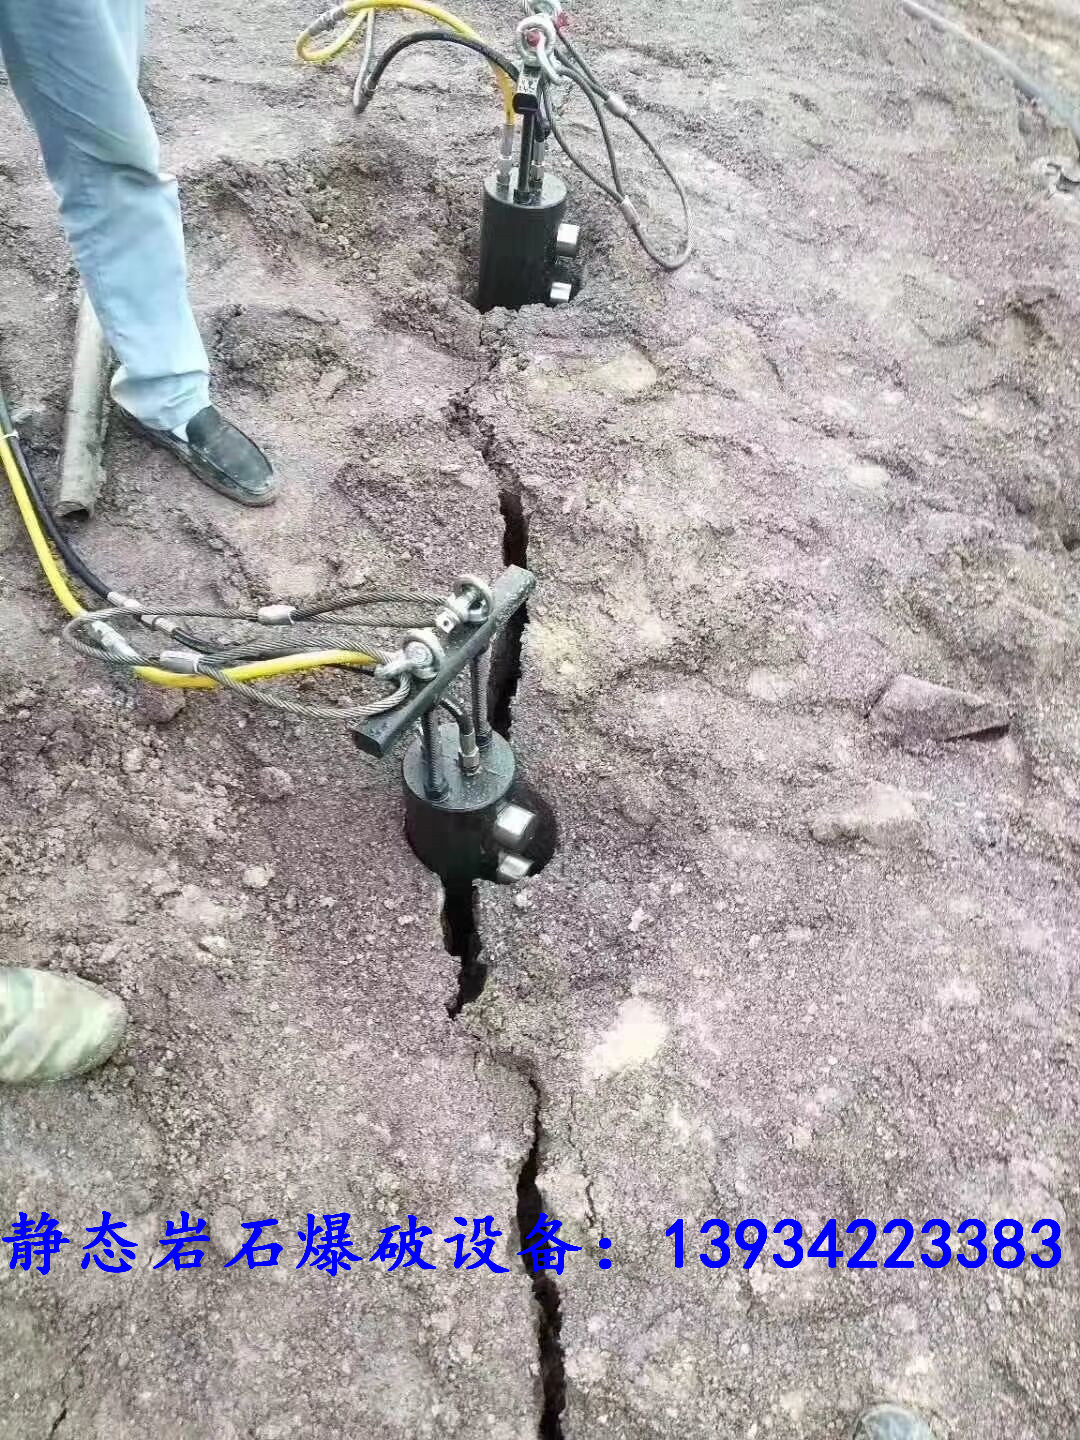 基坑槽管沟开挖液压涨裂快速破石办法